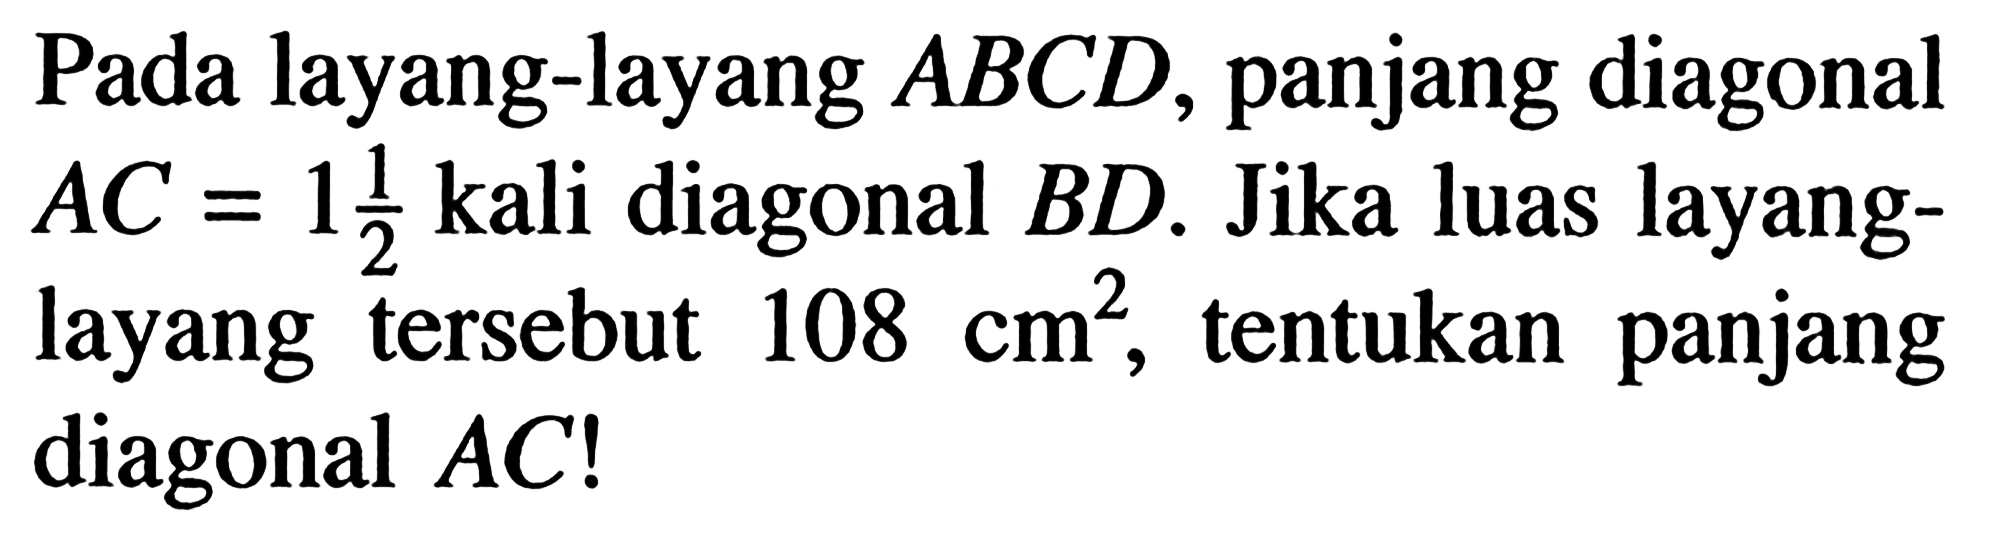 Pada layang-layang ABCD, panjang diagonal AC=1 1/2 kali diagonal BD. Jika luas layanglayang tersebut 108 cm^2, tentukan panjang diagonal AC!